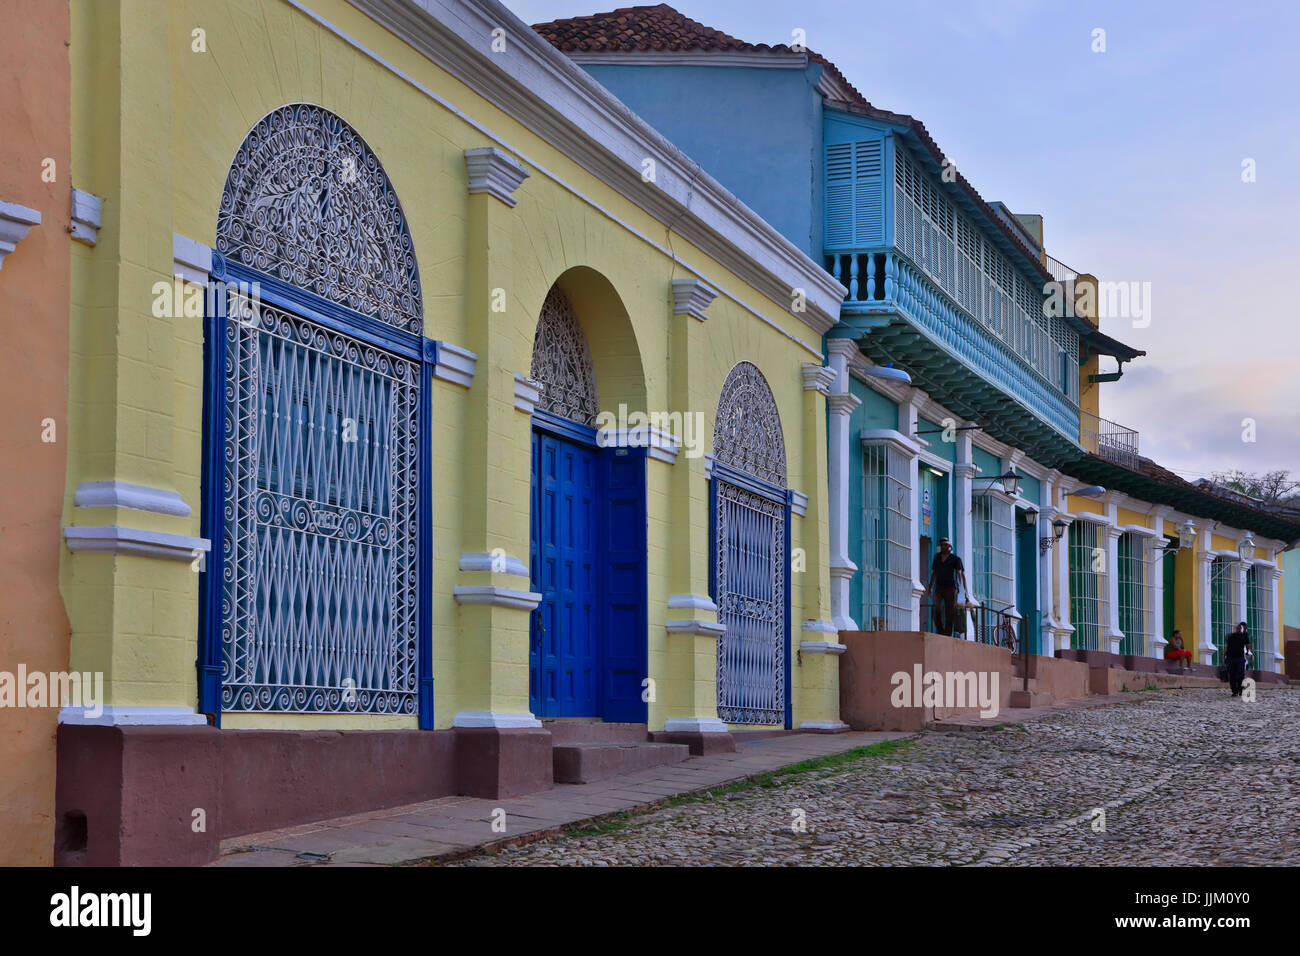 Les rues pavées, travaux en fer forgé et maisons colorées de Trinidad, Cuba Banque D'Images